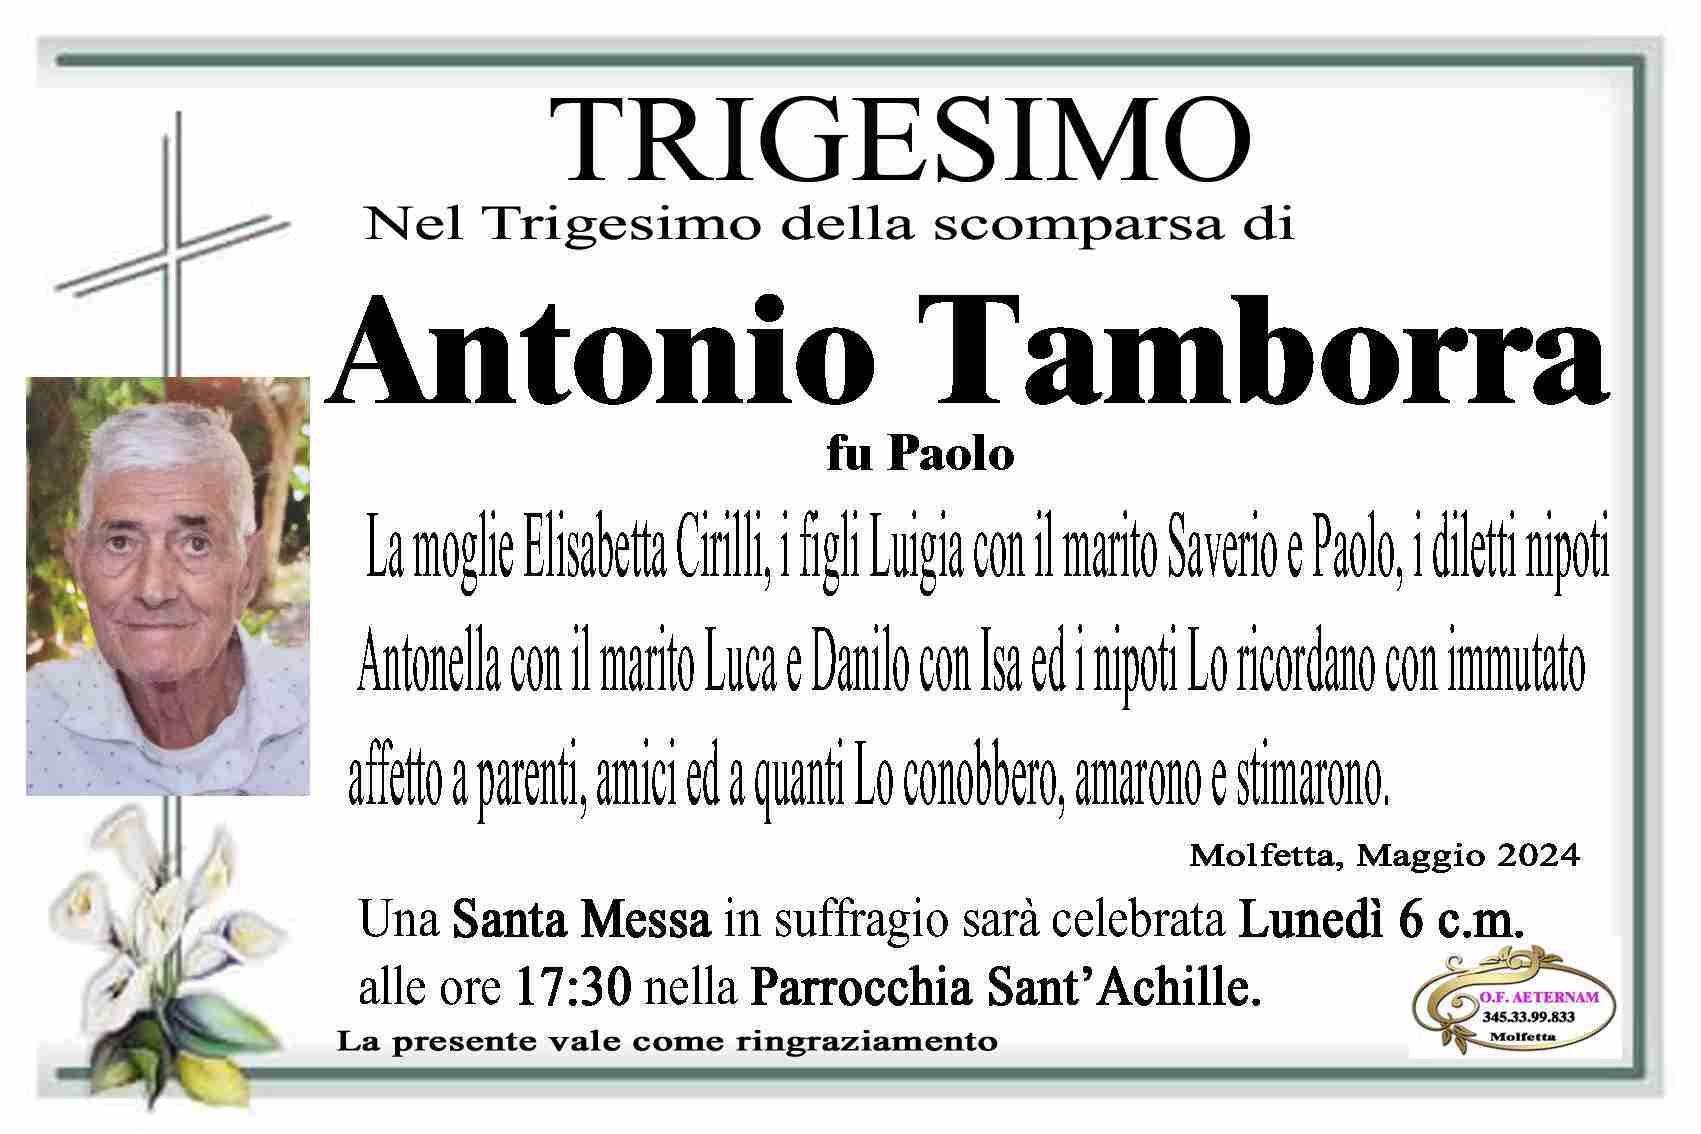 Antonio Tamborra